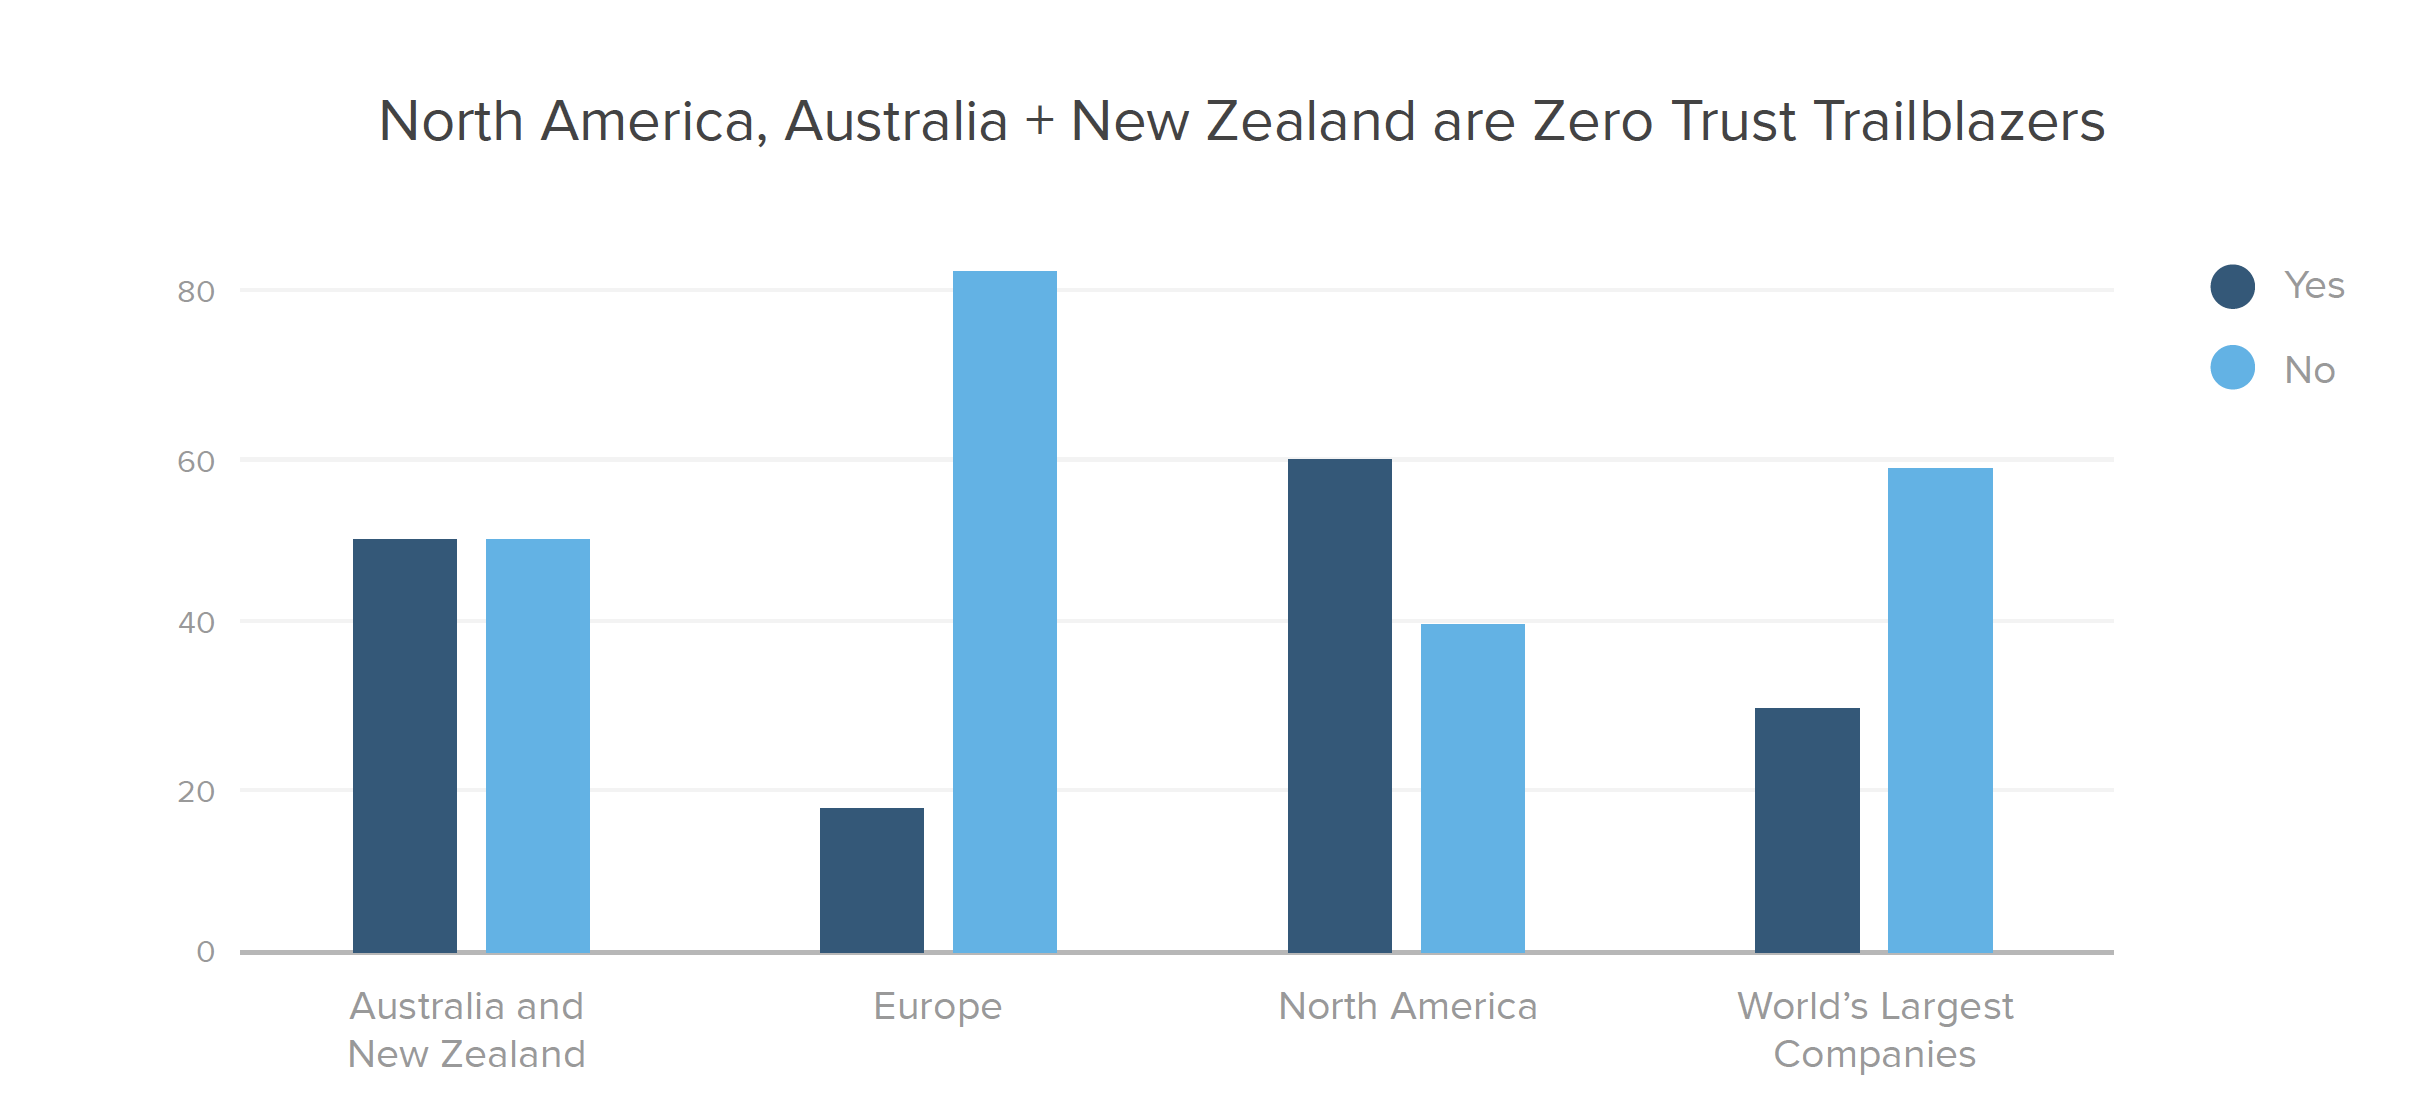 North America, Australia + New Zealand are Zero Trust Trailblazers